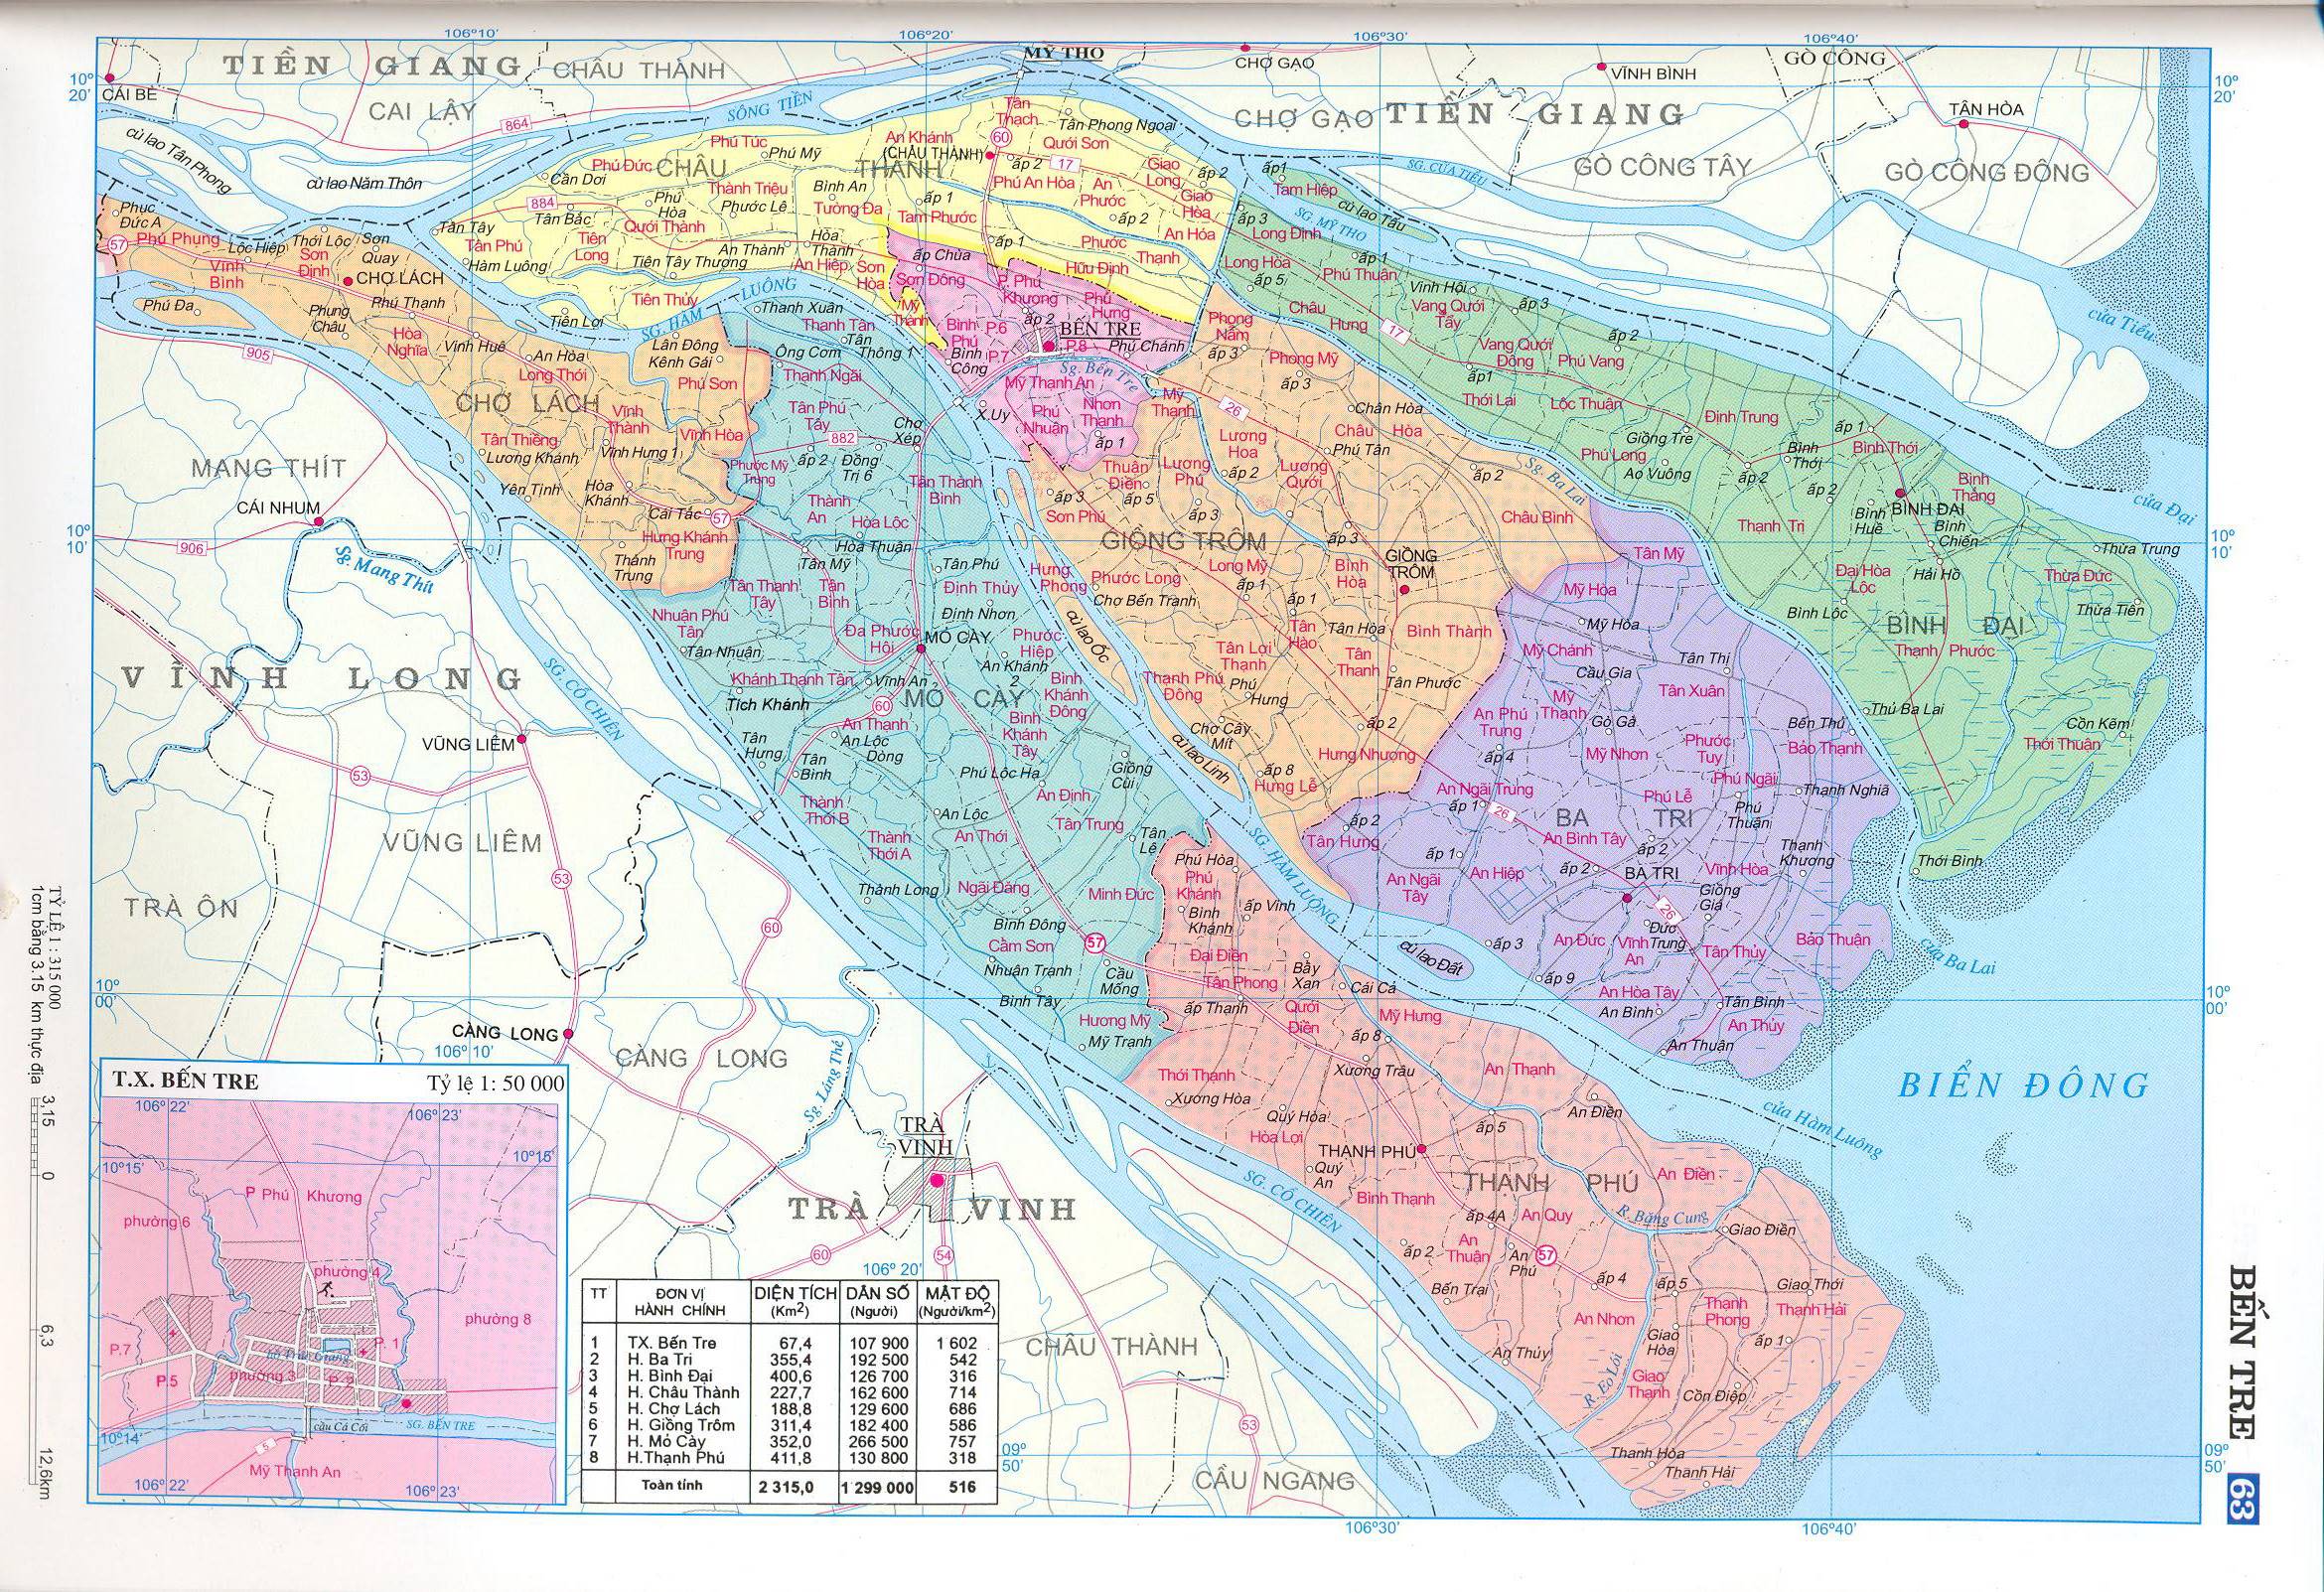 Bản đồ hành chính tỉnh Bến Tre